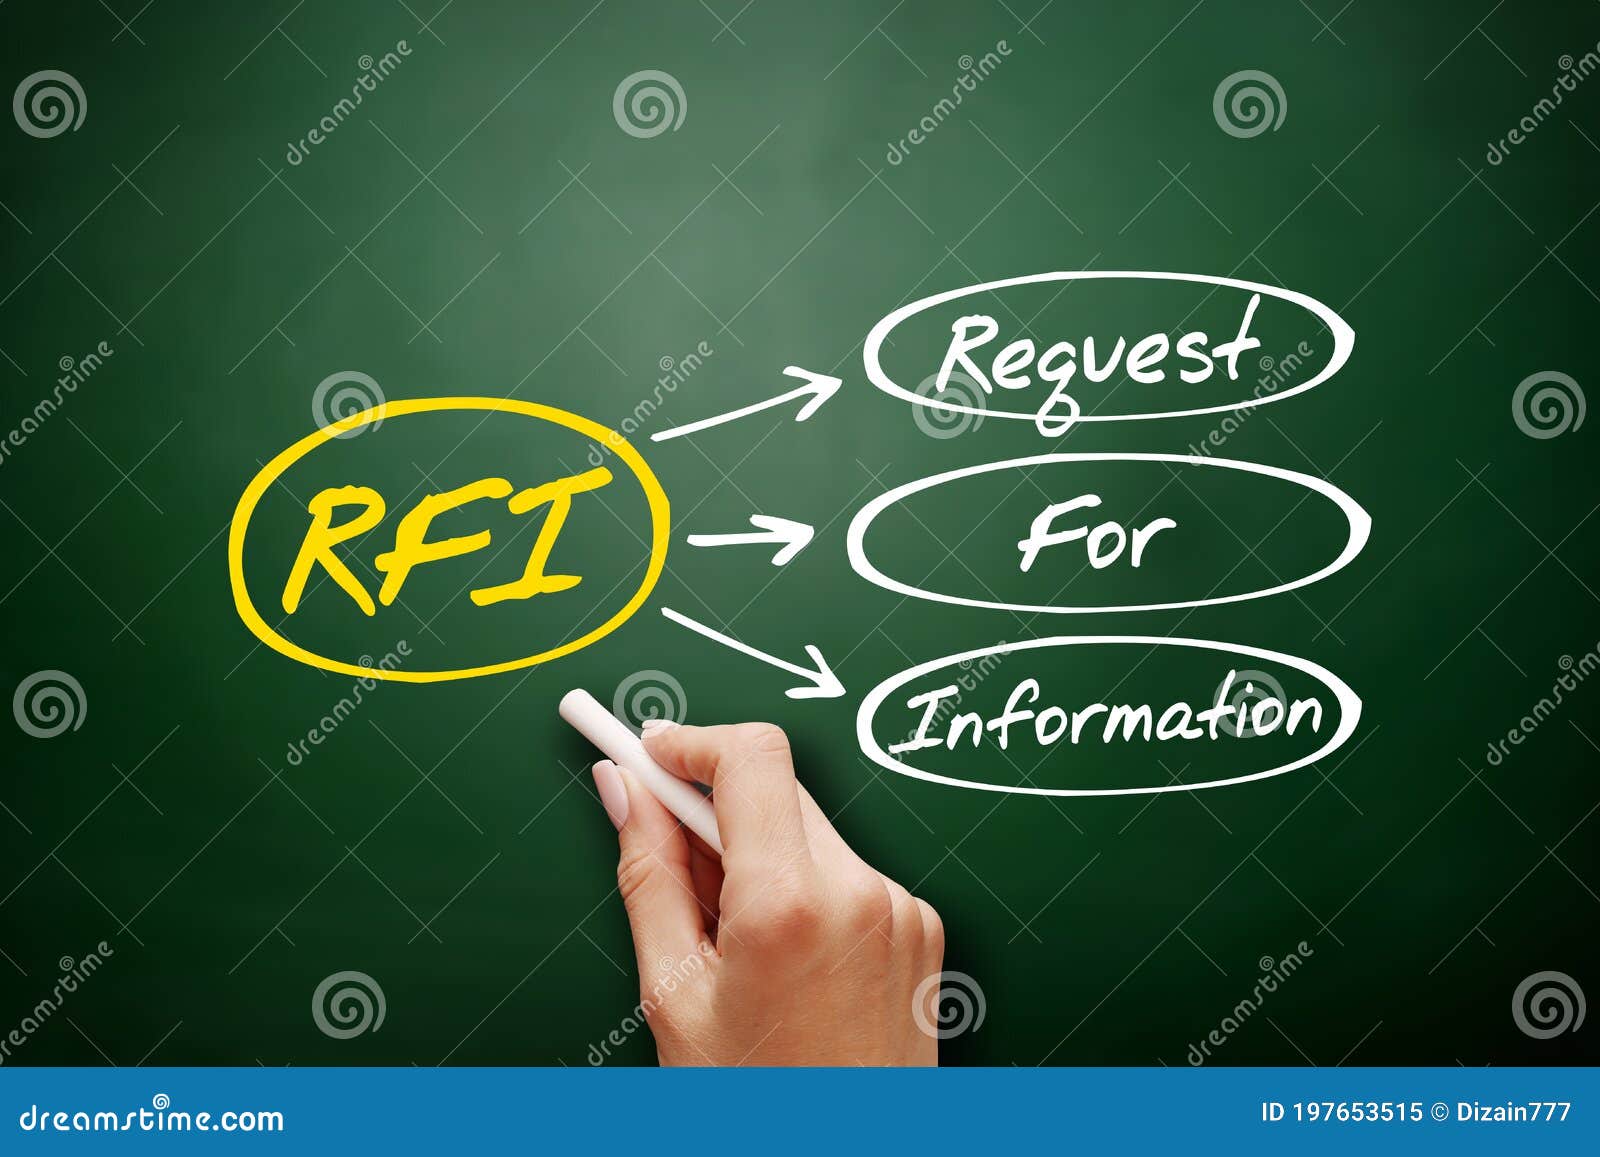 rfi - request for information, acronym on blackboard